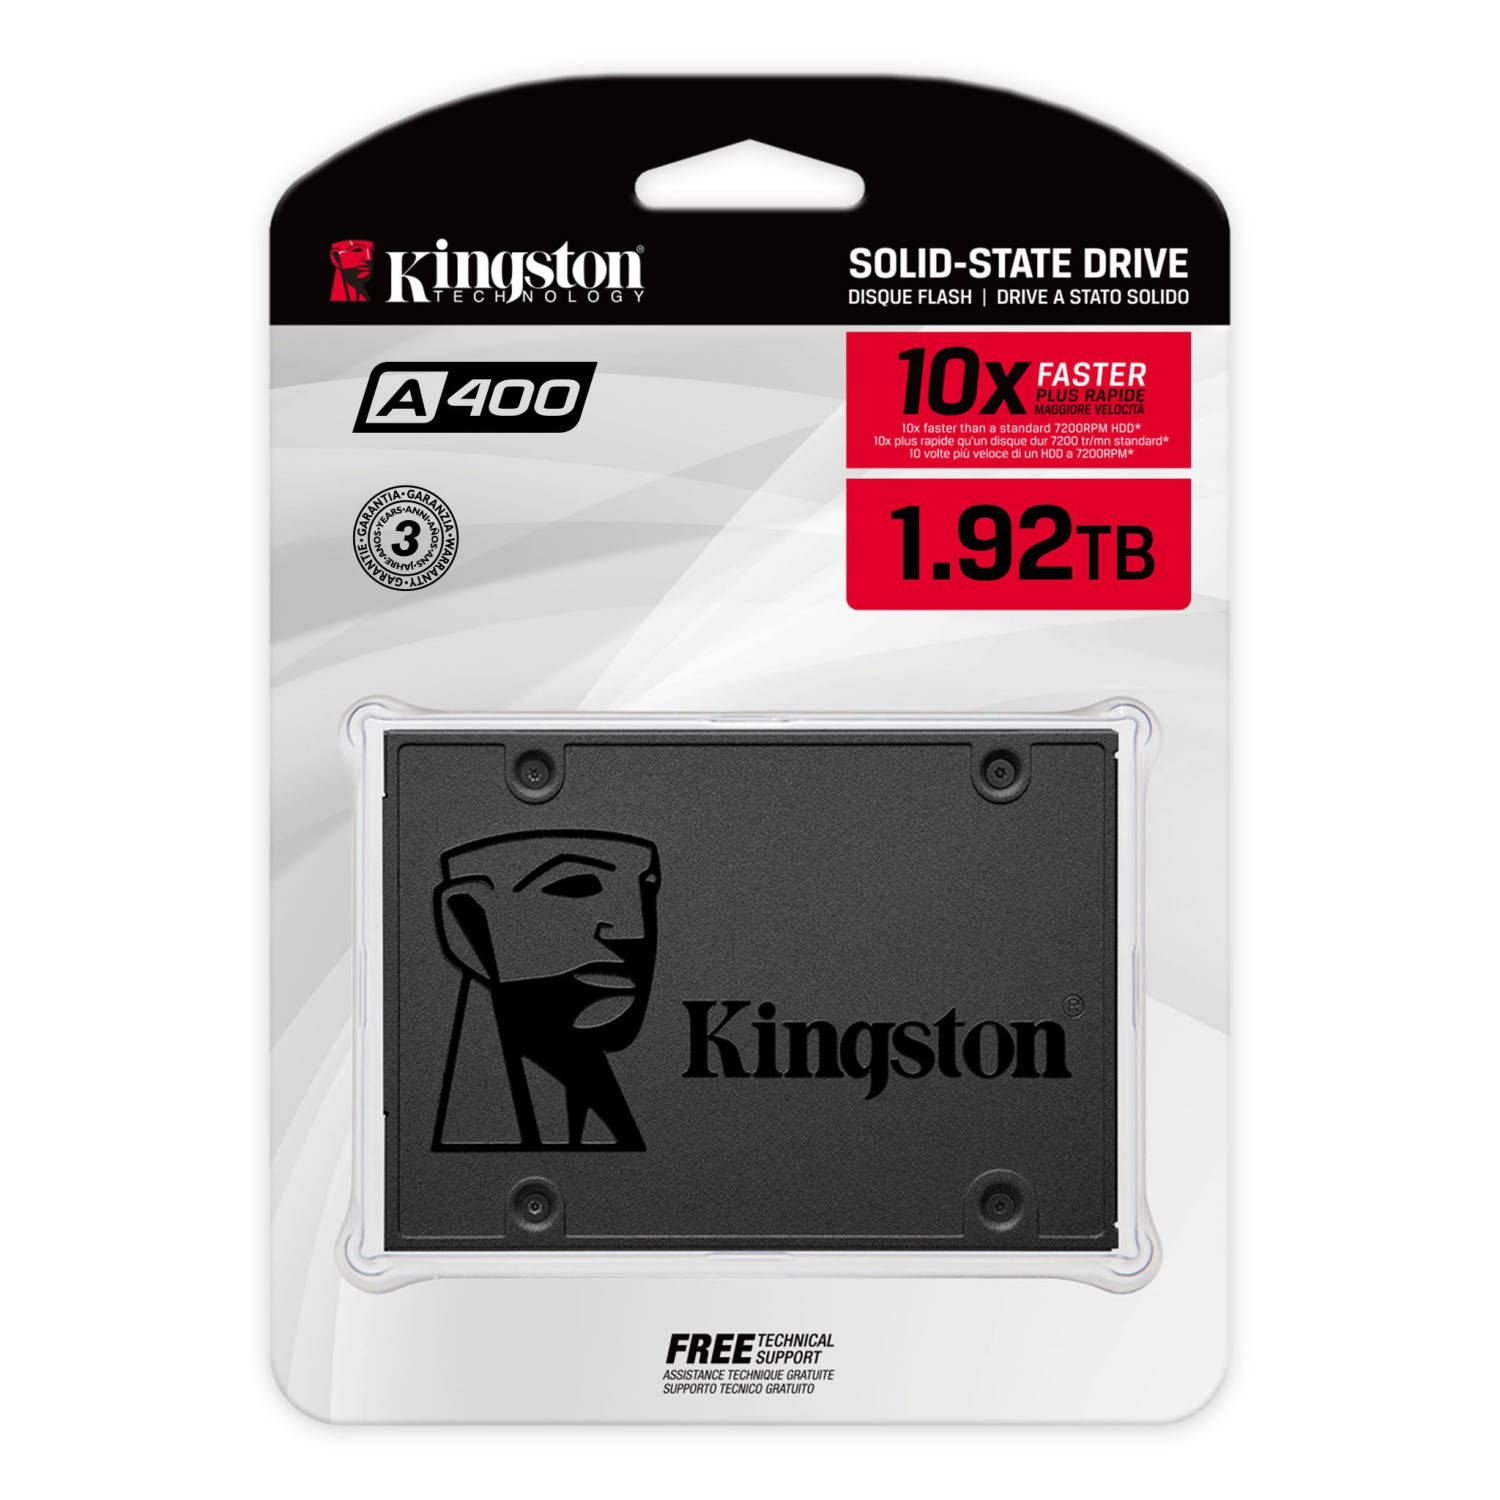 حافظه اس اس دی Kingston A400 1.92TB-1